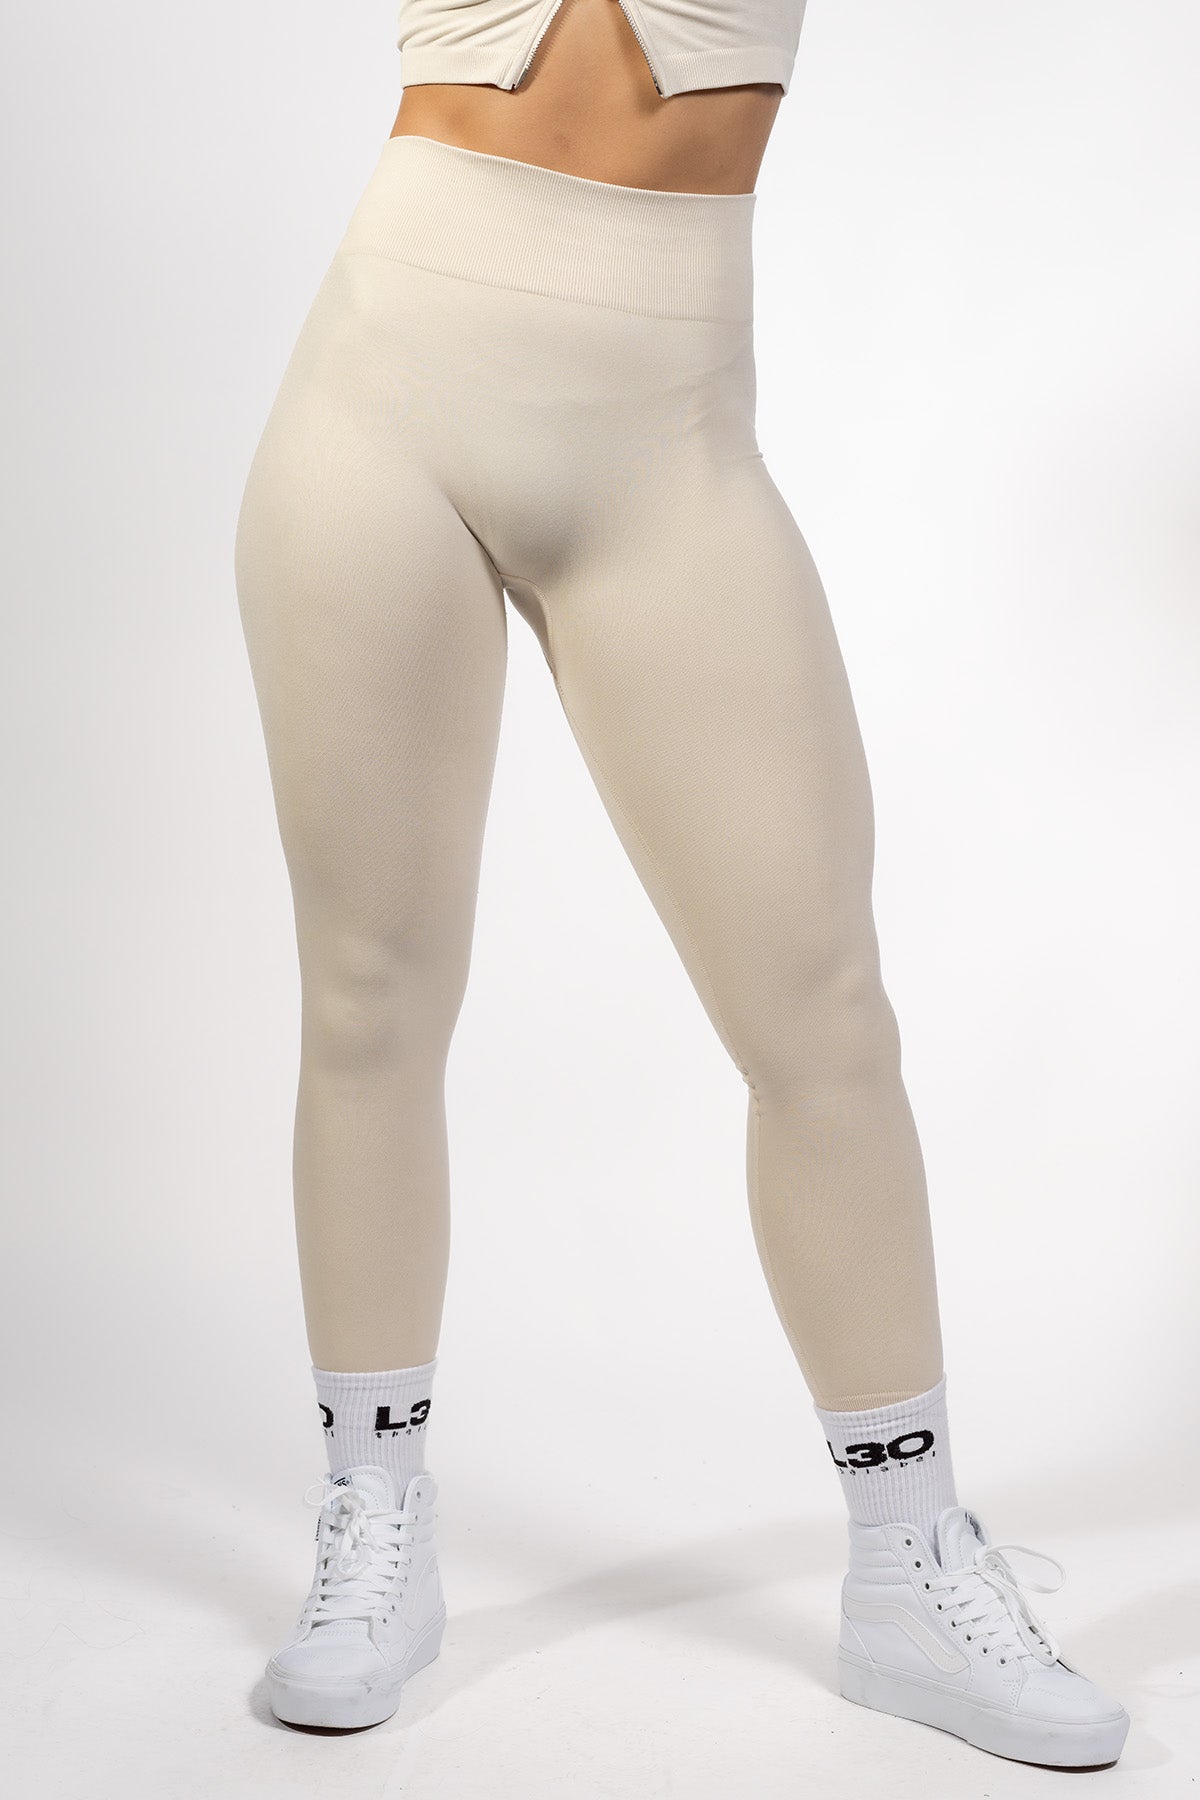 ZARA ECRU CREAM Beige ribbed seamless leggings Size XS-S £8.00 - PicClick UK